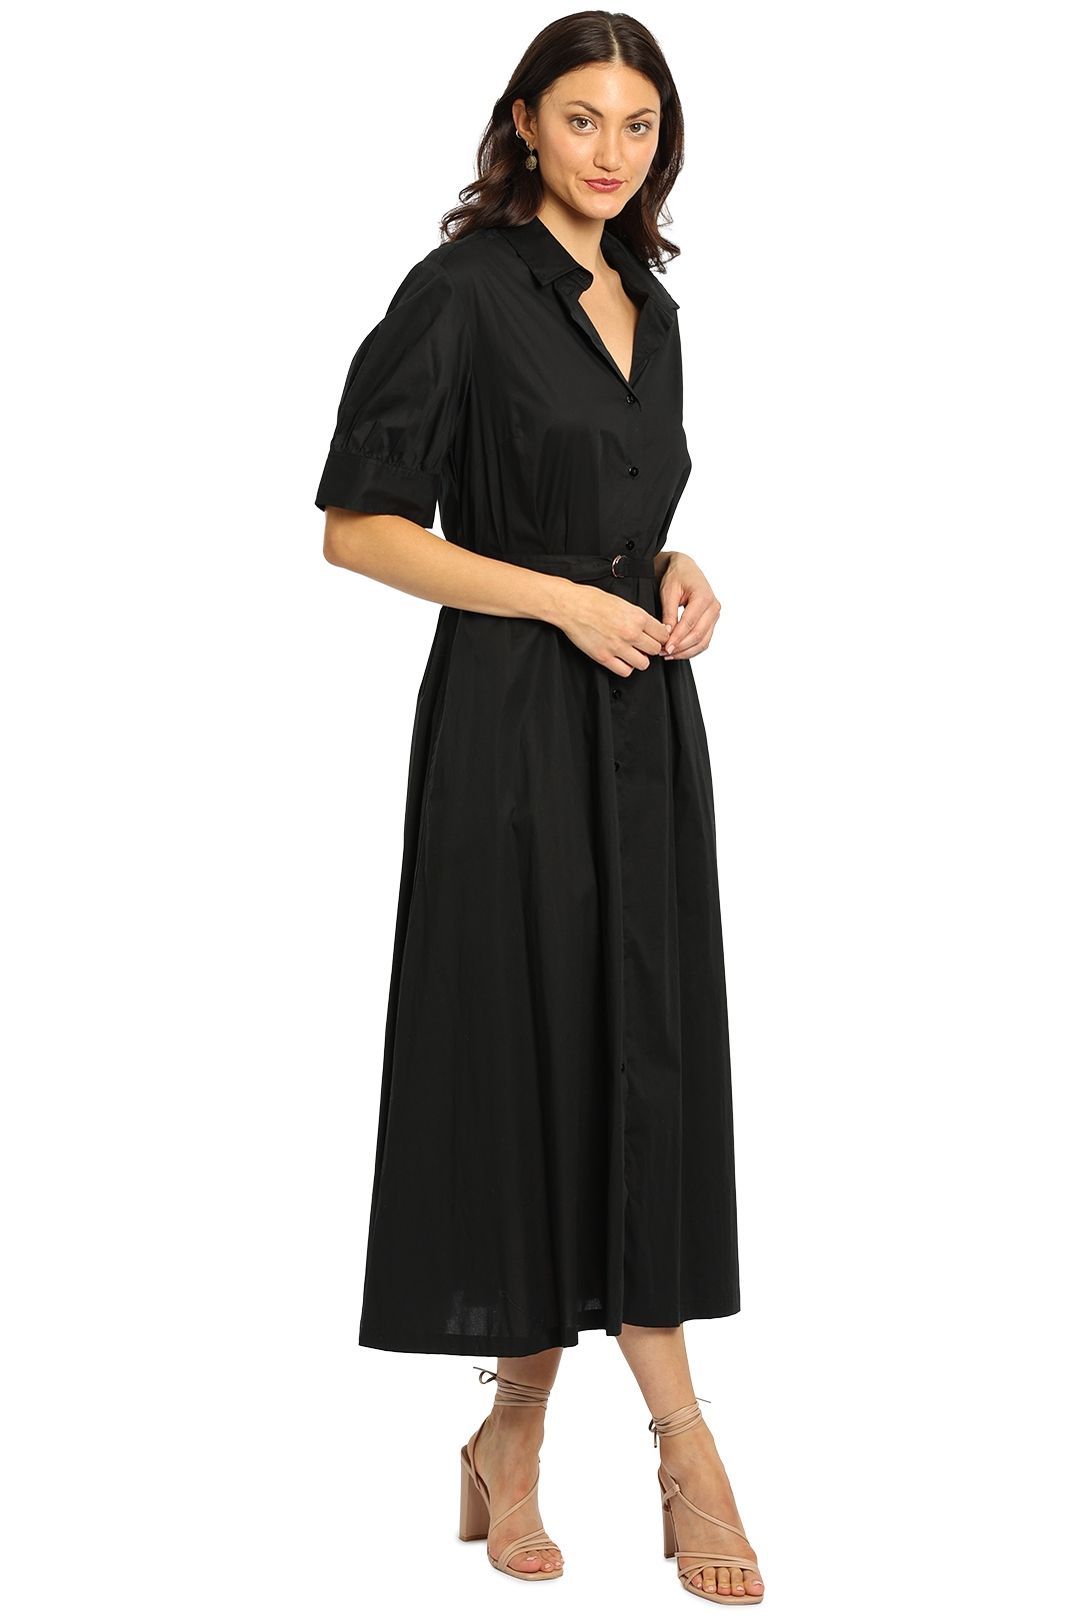 Kate Sylvester Jo Dress Black Full Skirt